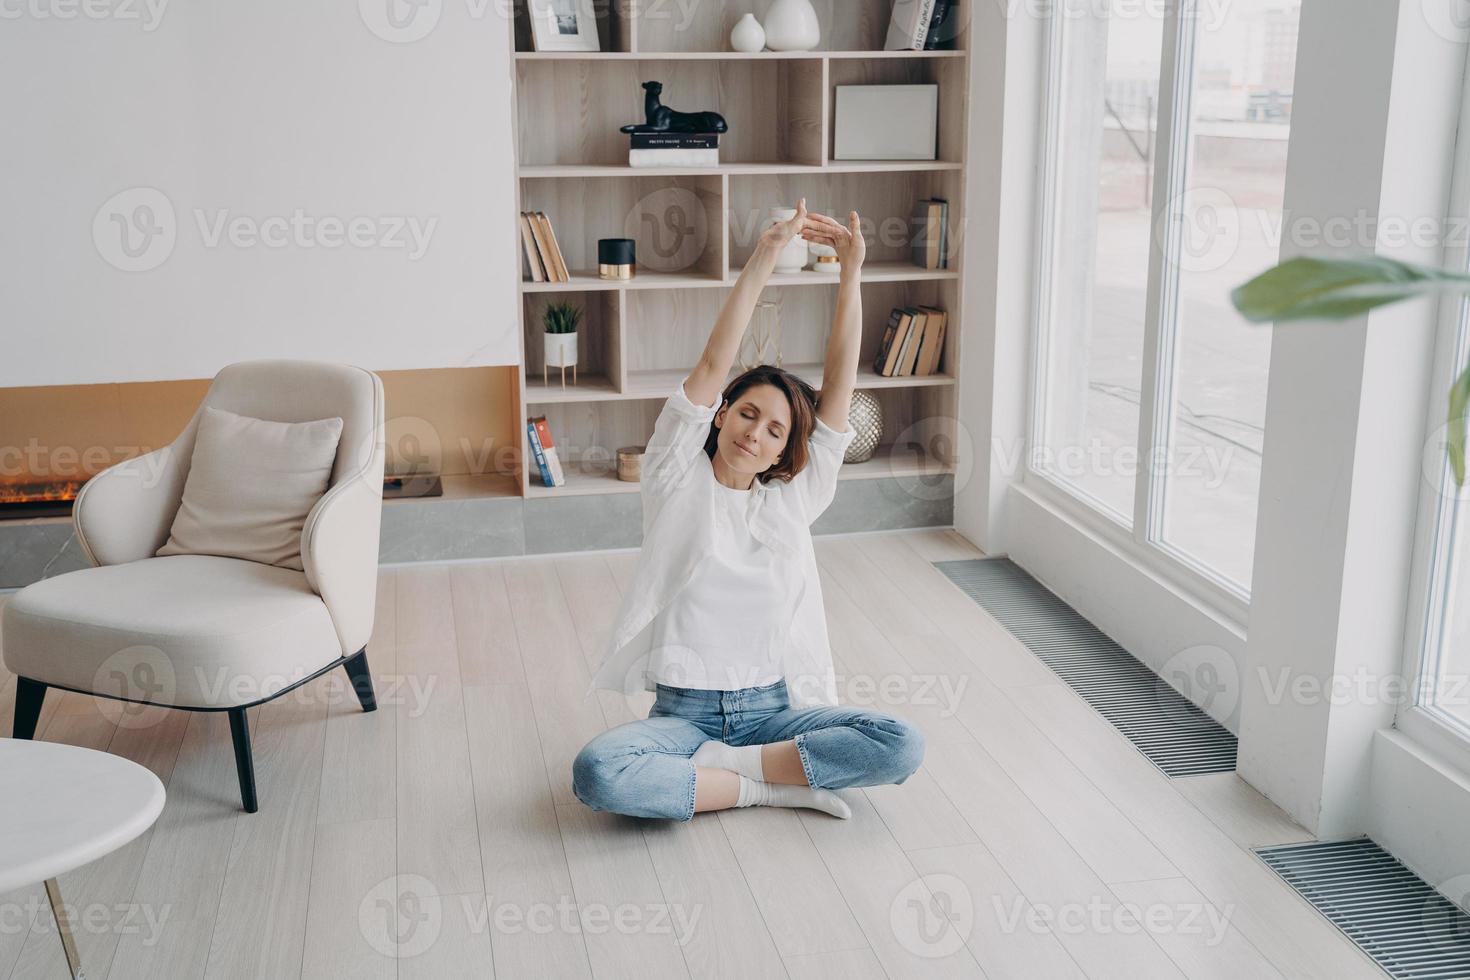 fêmea praticando ioga no chão na sala de estar, esticando os braços para cima. estilo de vida saudável, bem-estar foto